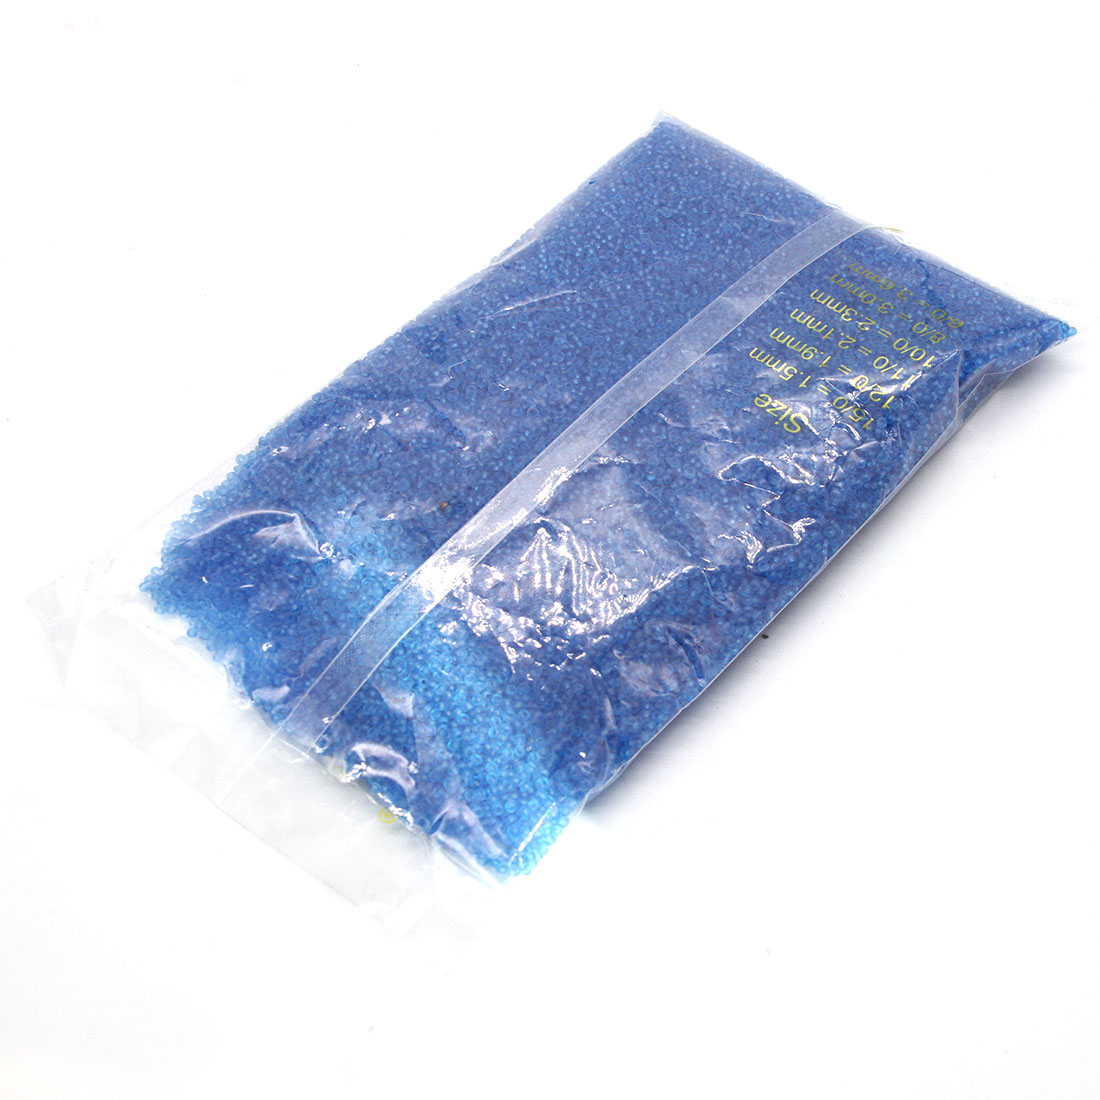 Blue 3mm 10,000 packs